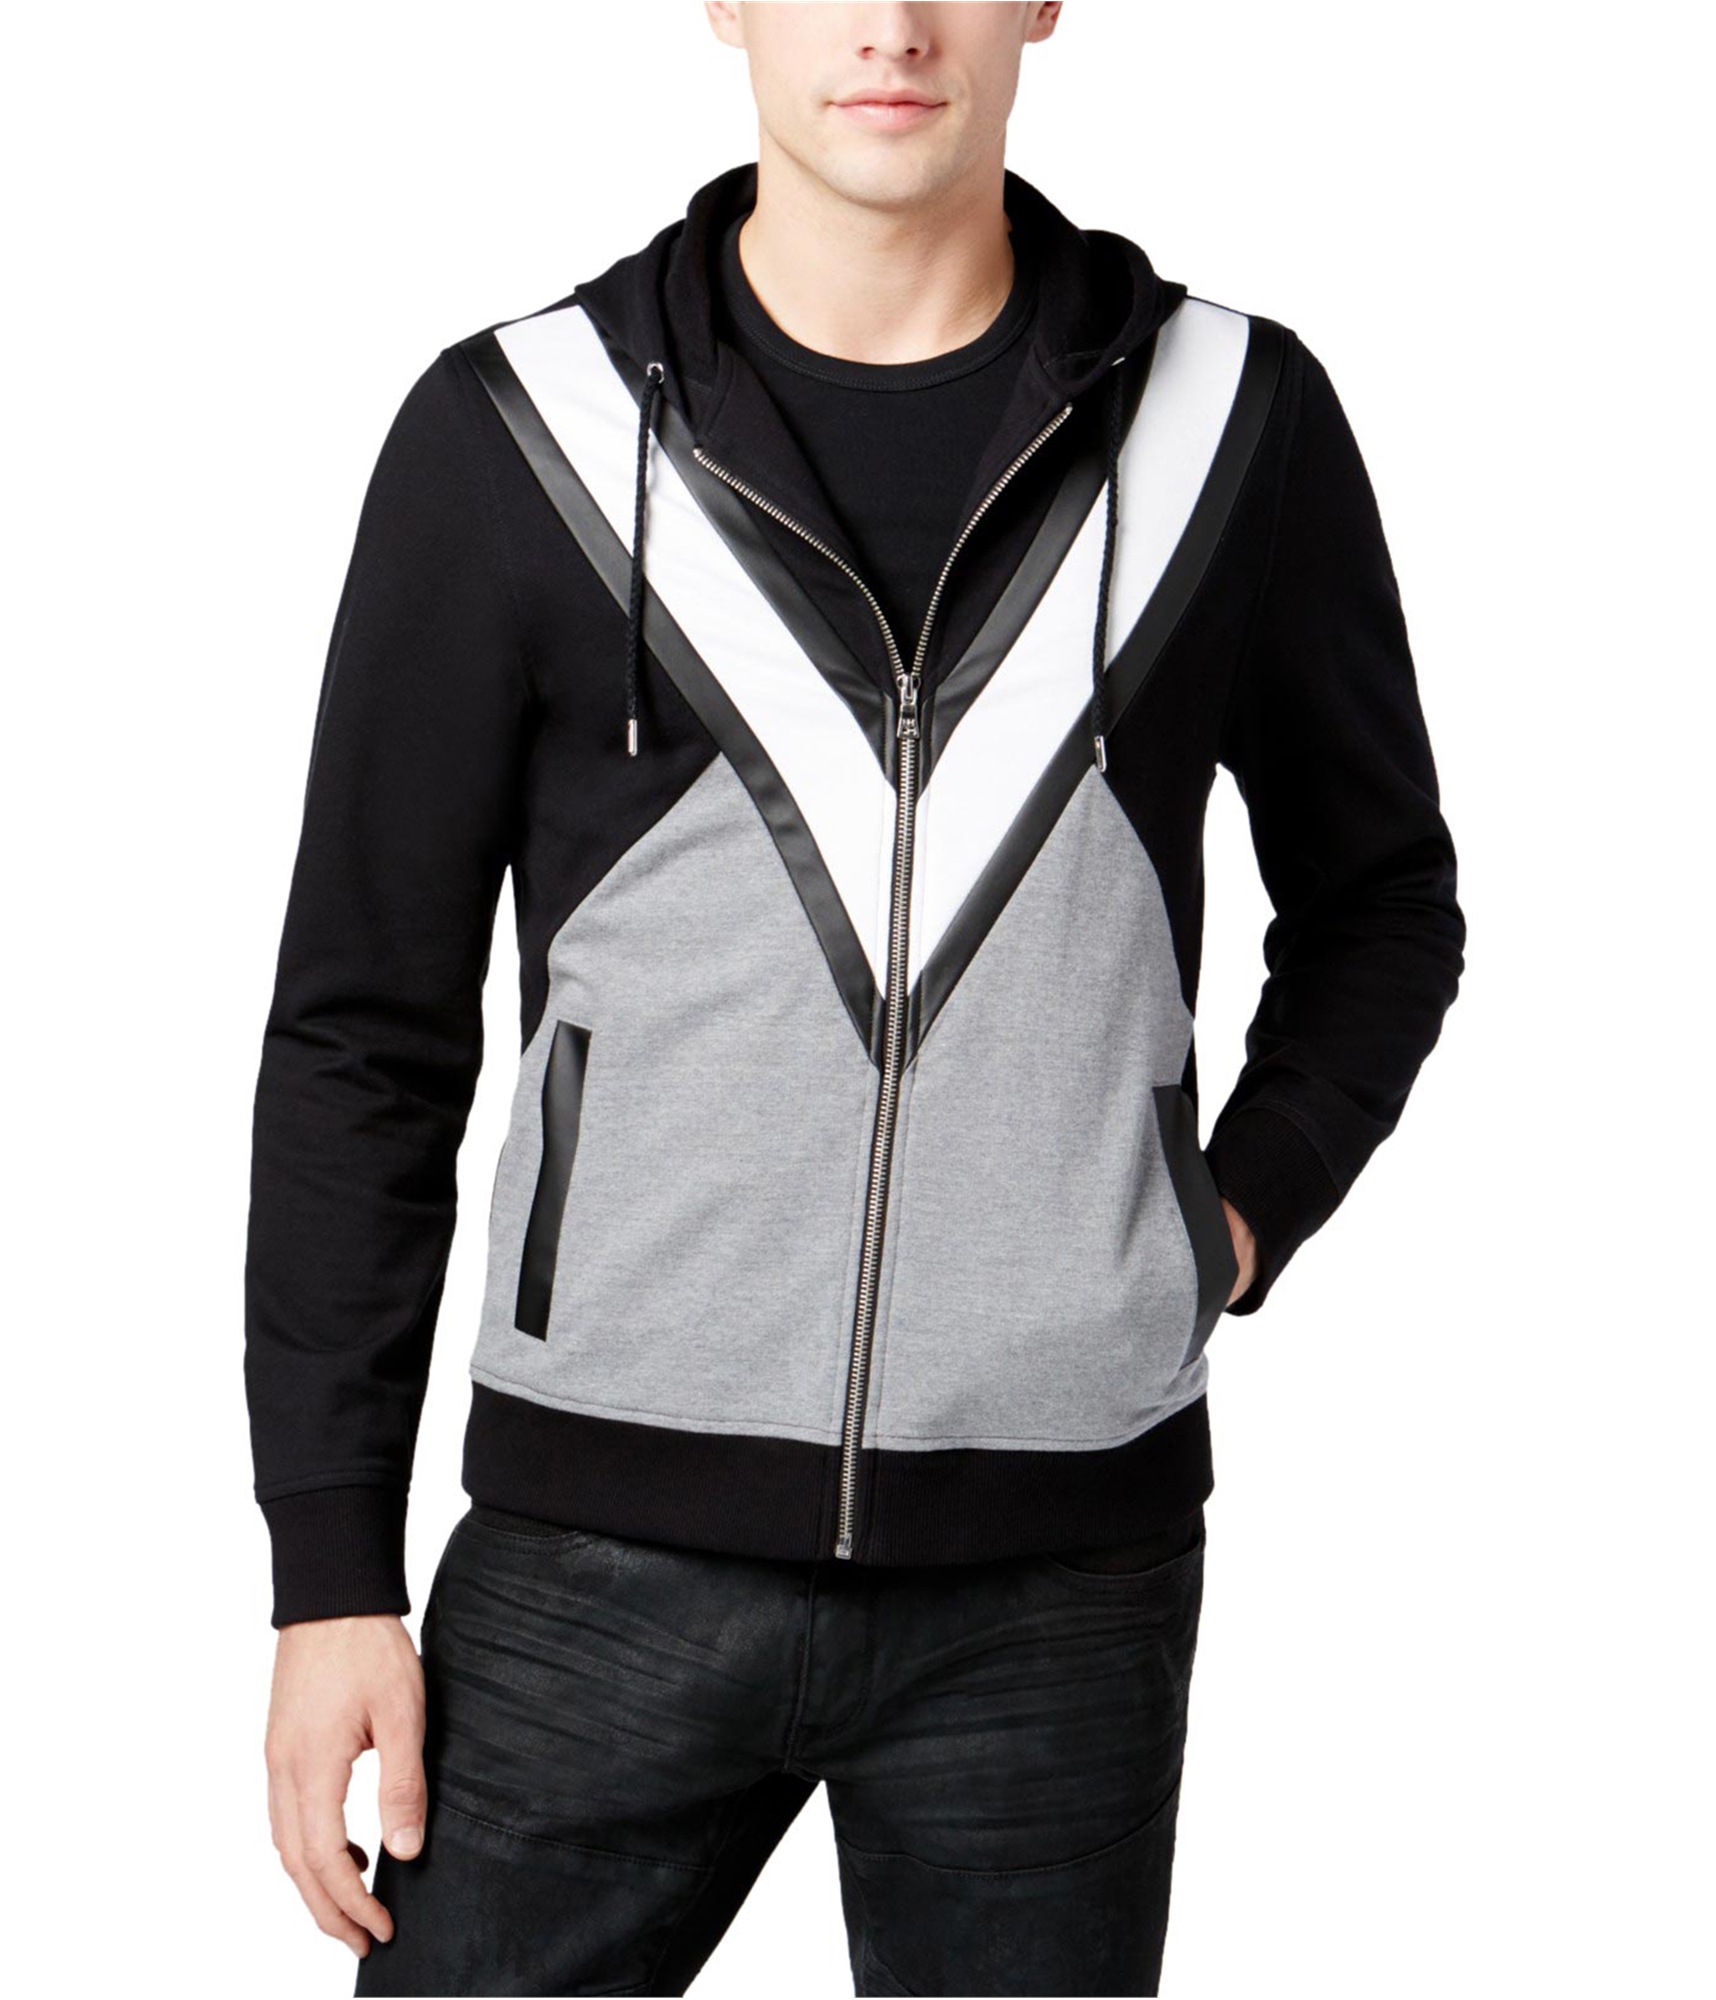 I-N-C Mens Colorblock Hoodie Sweatshirt, Black, X-Large | eBay